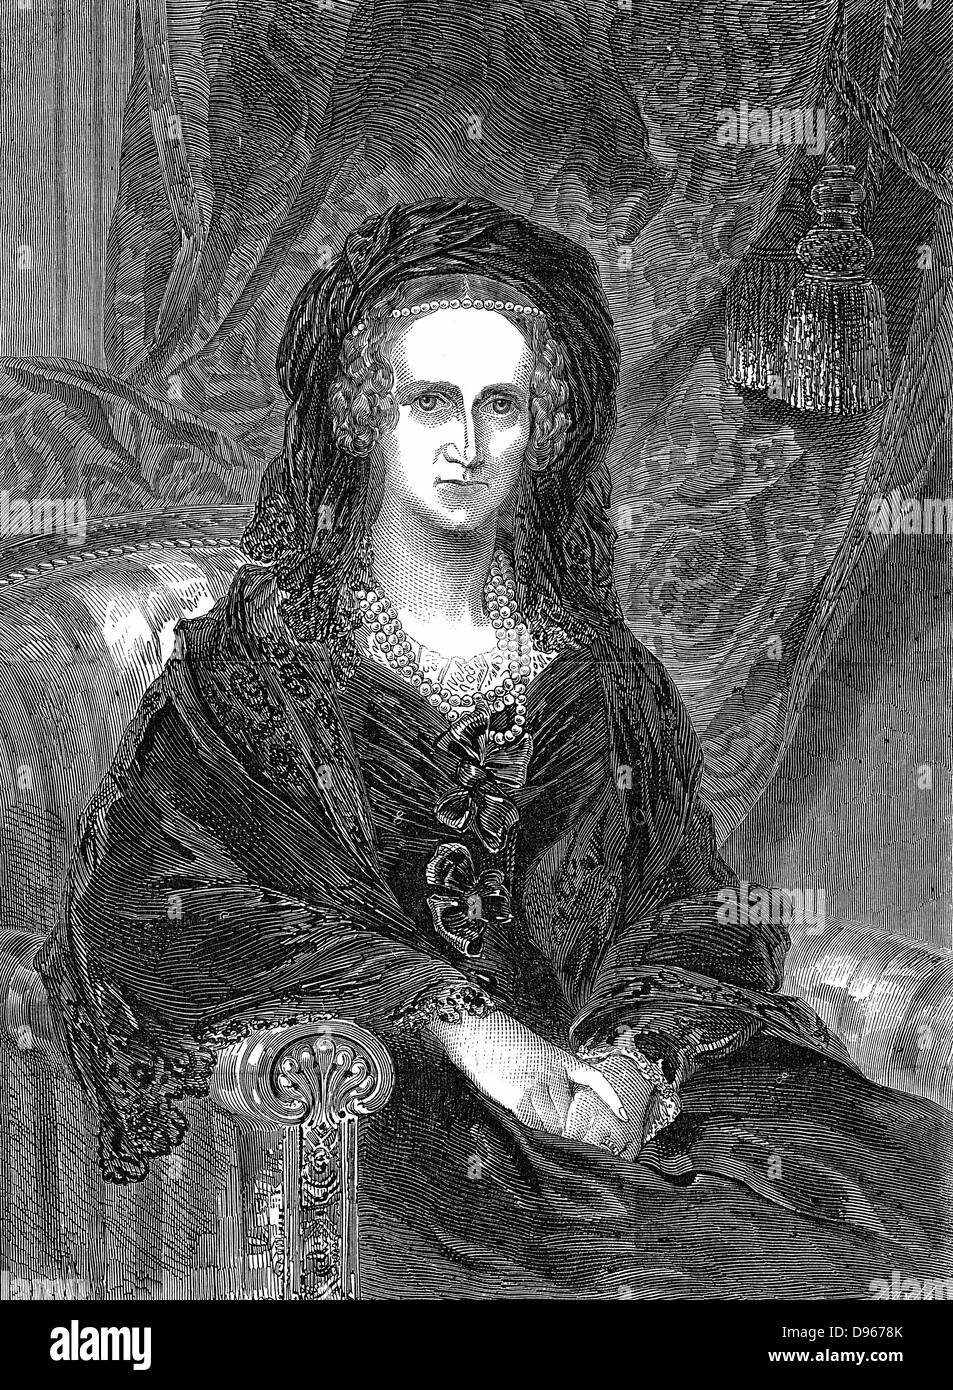 Adelaide di Sassonia Coburgo - Gotha Meiningen (1792-1849) tedesco-nato regina consorte di Guglielmo IV di Gran Bretagna (1830-37). Incisione di Adelaide come una vedova pubblicato 1849 Foto Stock